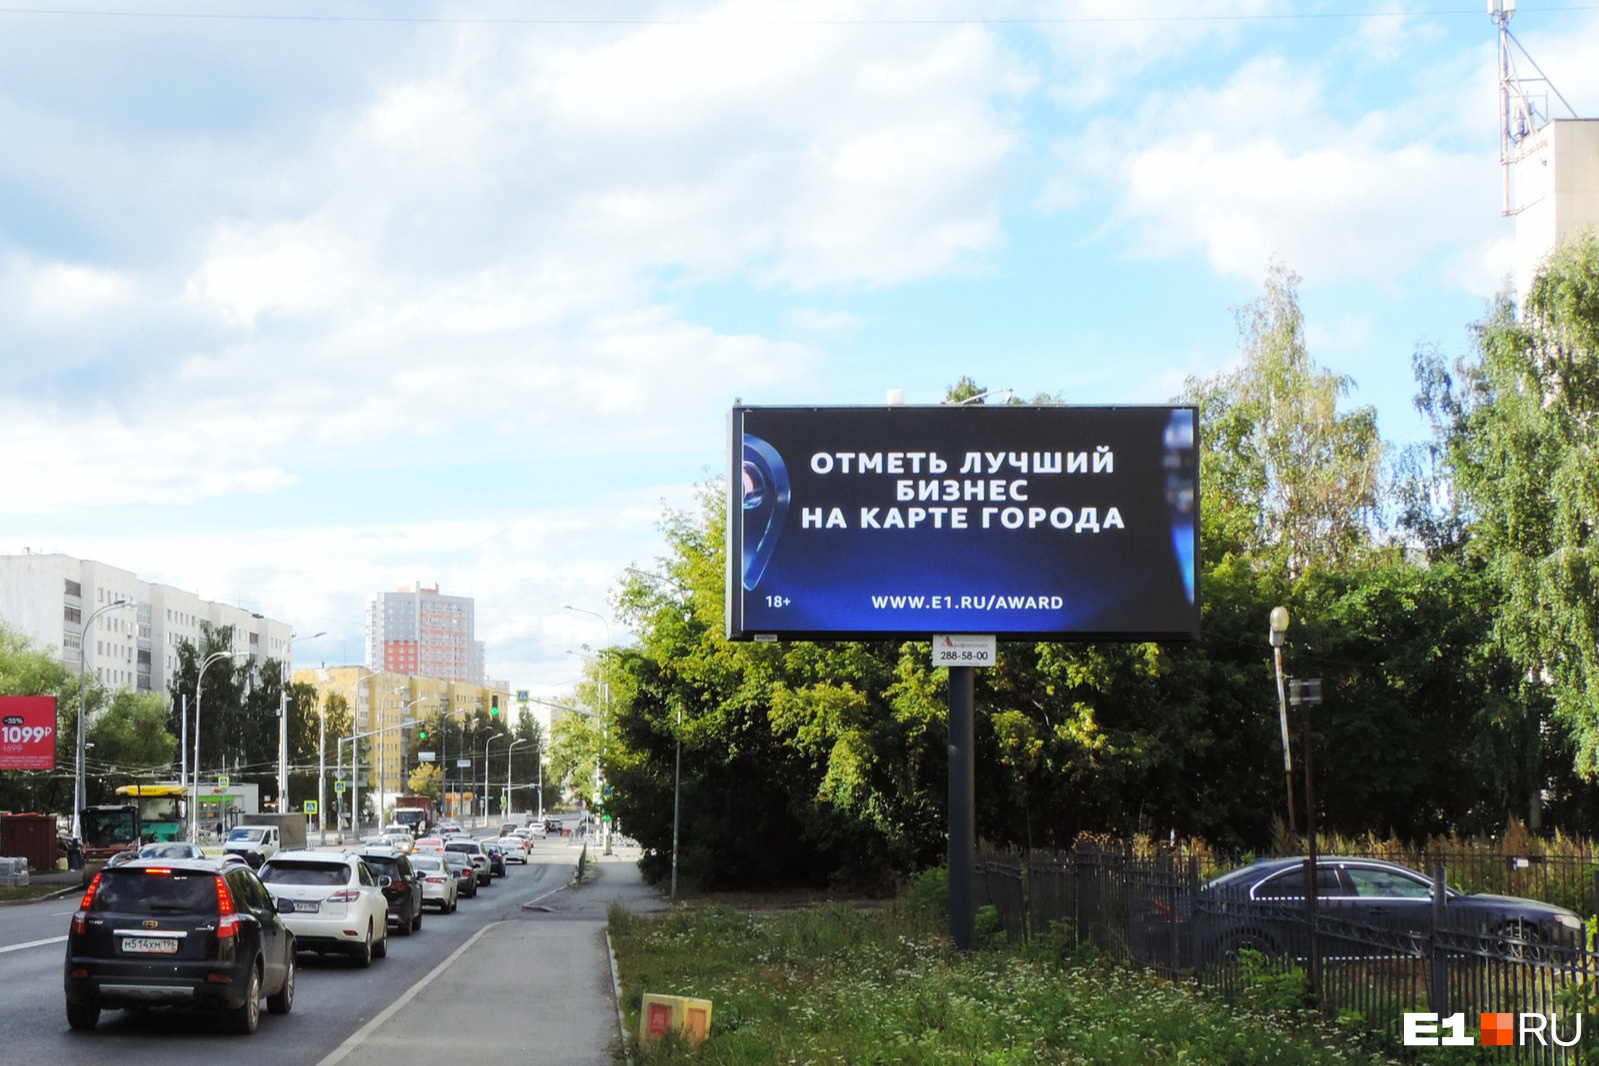 Погнали! Началось народное голосование за лучший бизнес Екатеринбурга